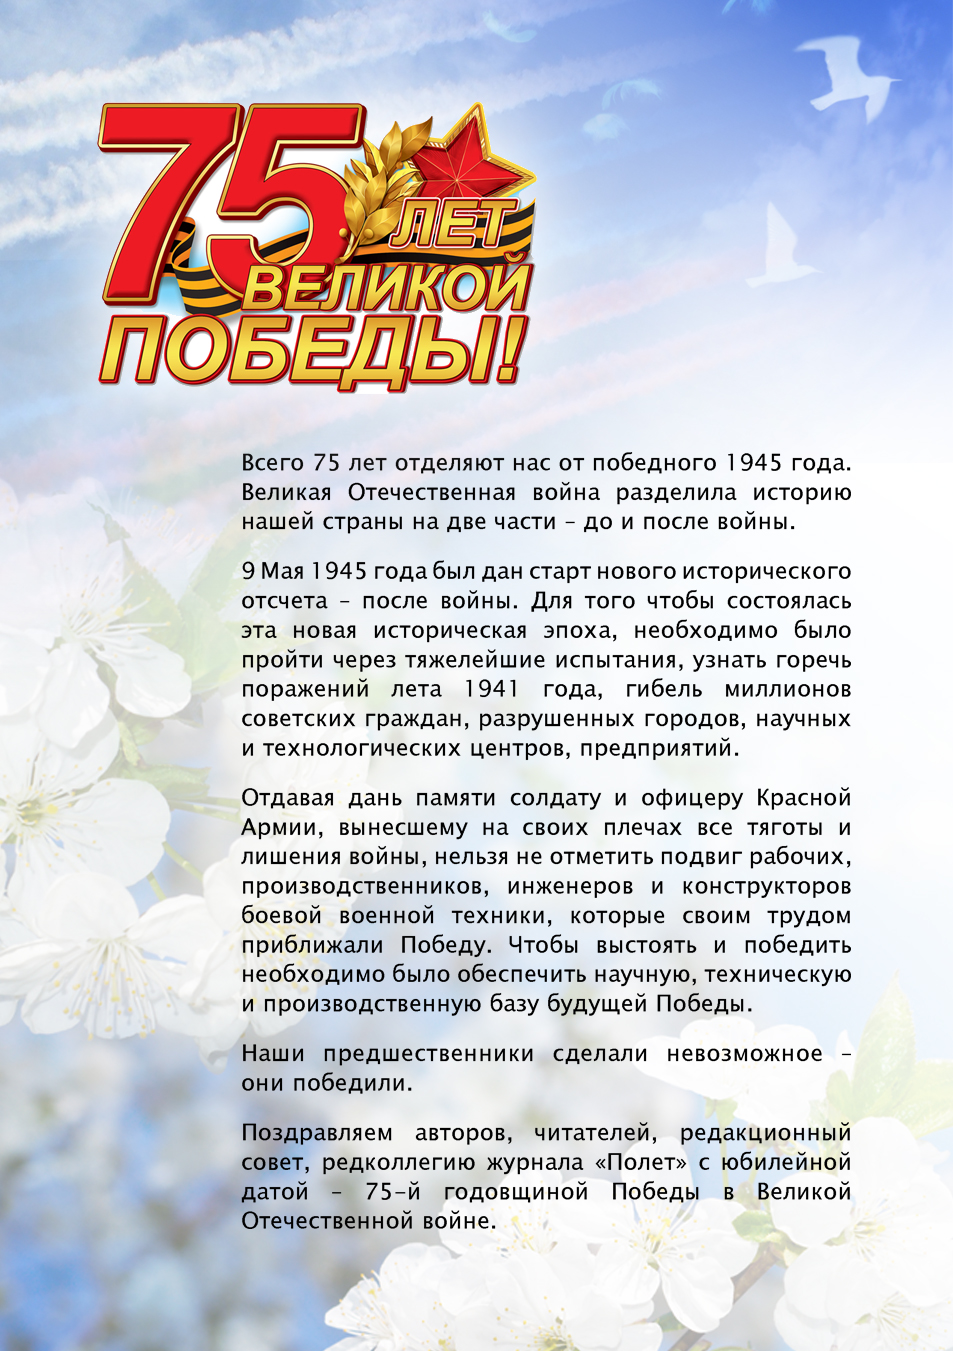 Поздравление редакции журнала Полет c 75-летием Великой Победы